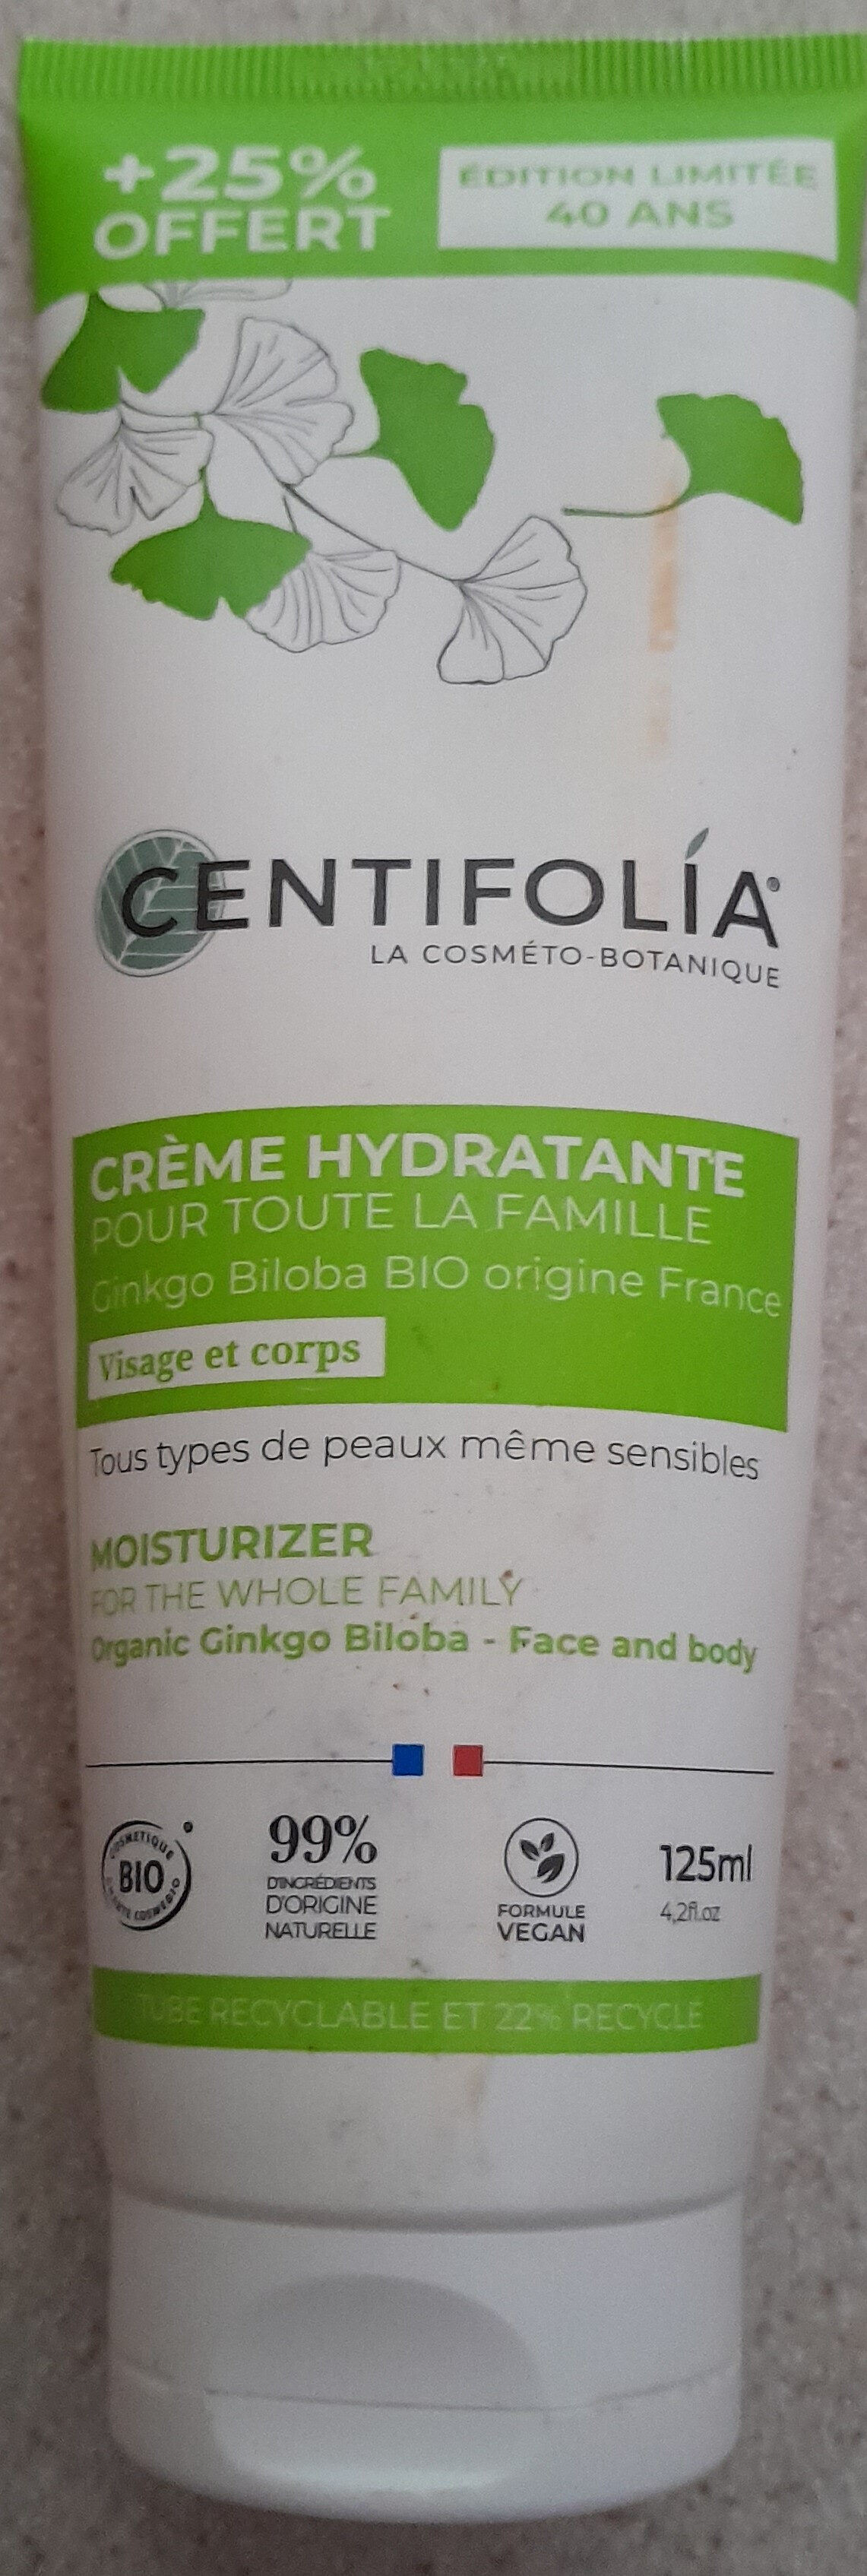 crème hydratante pour toute la famille - 製品 - fr